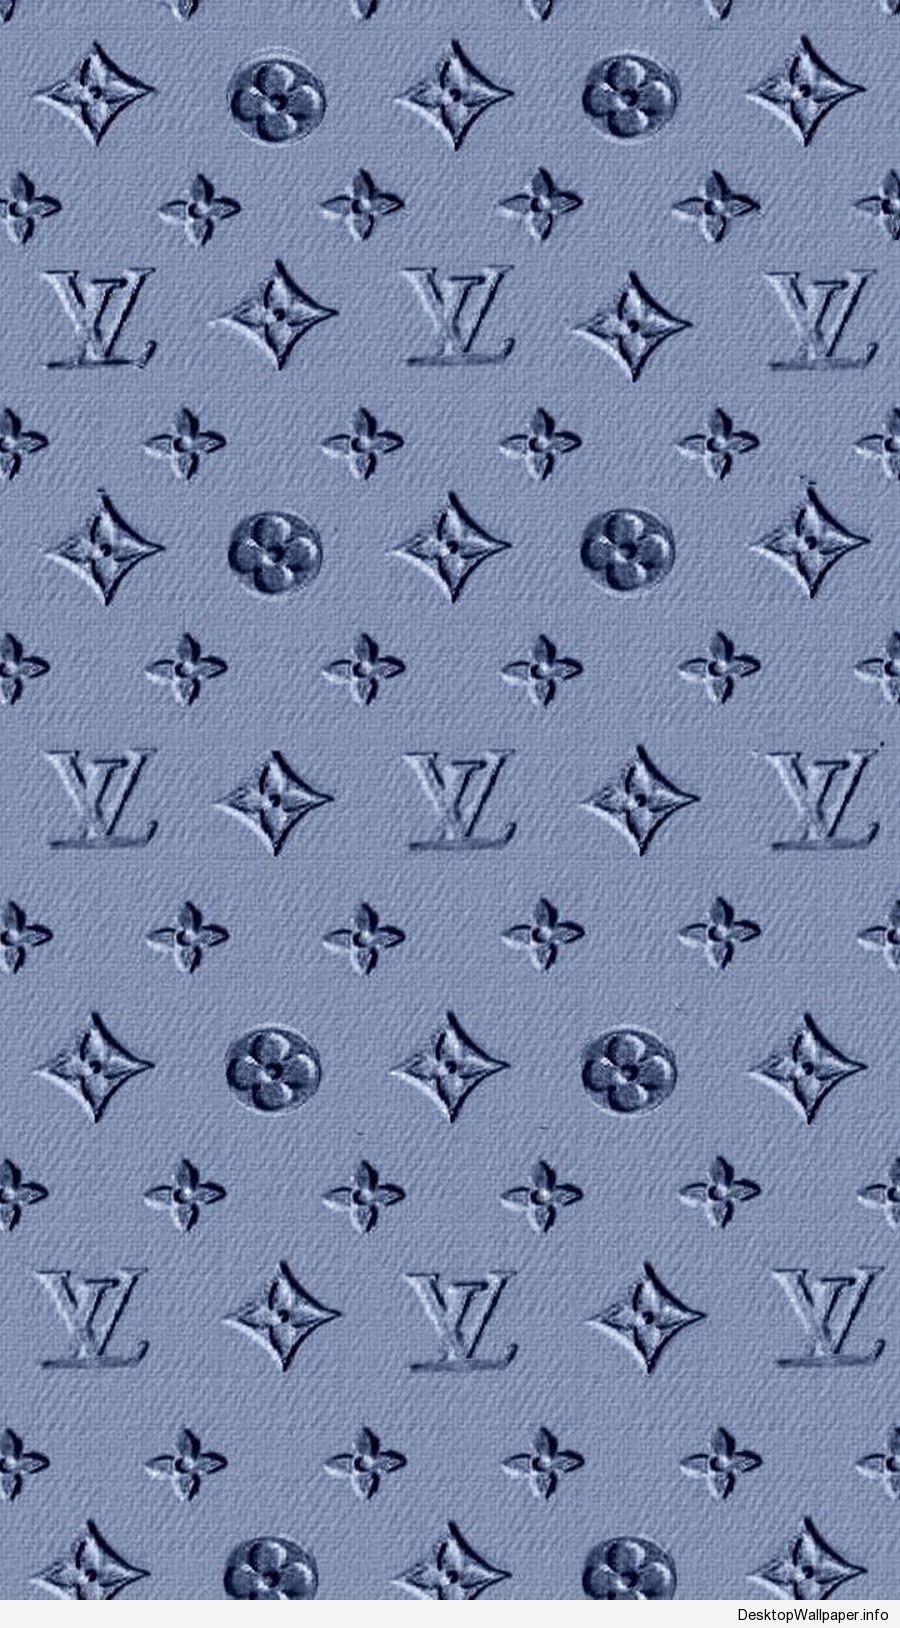 Louis Vuitton Aesthetic Wallpaper Laptop. Ville du Muy